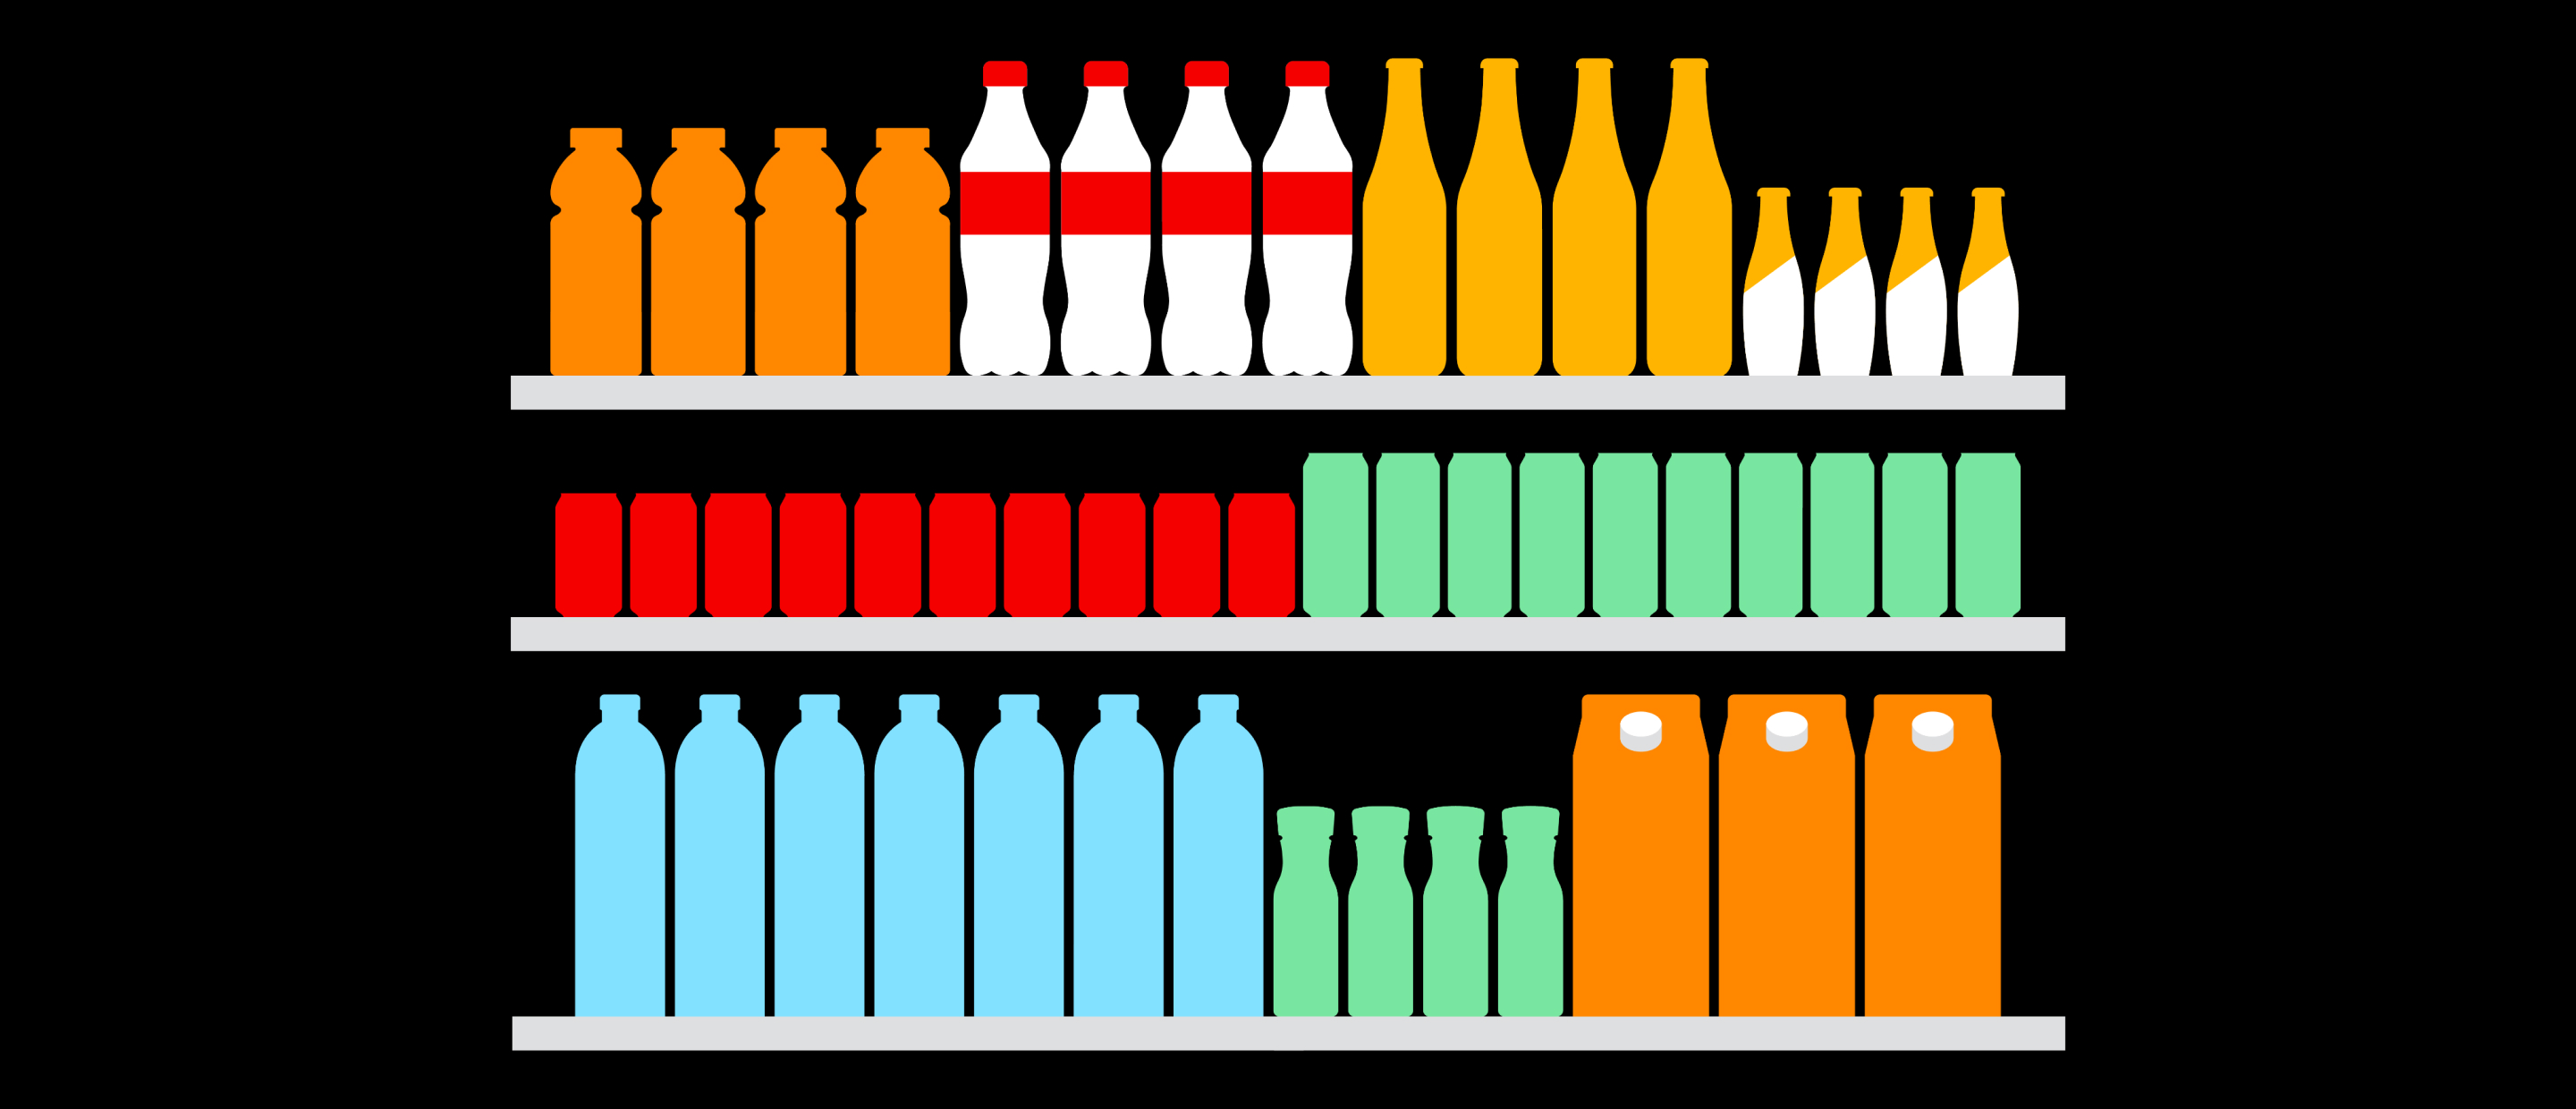 a vector image of shelves full of bottles